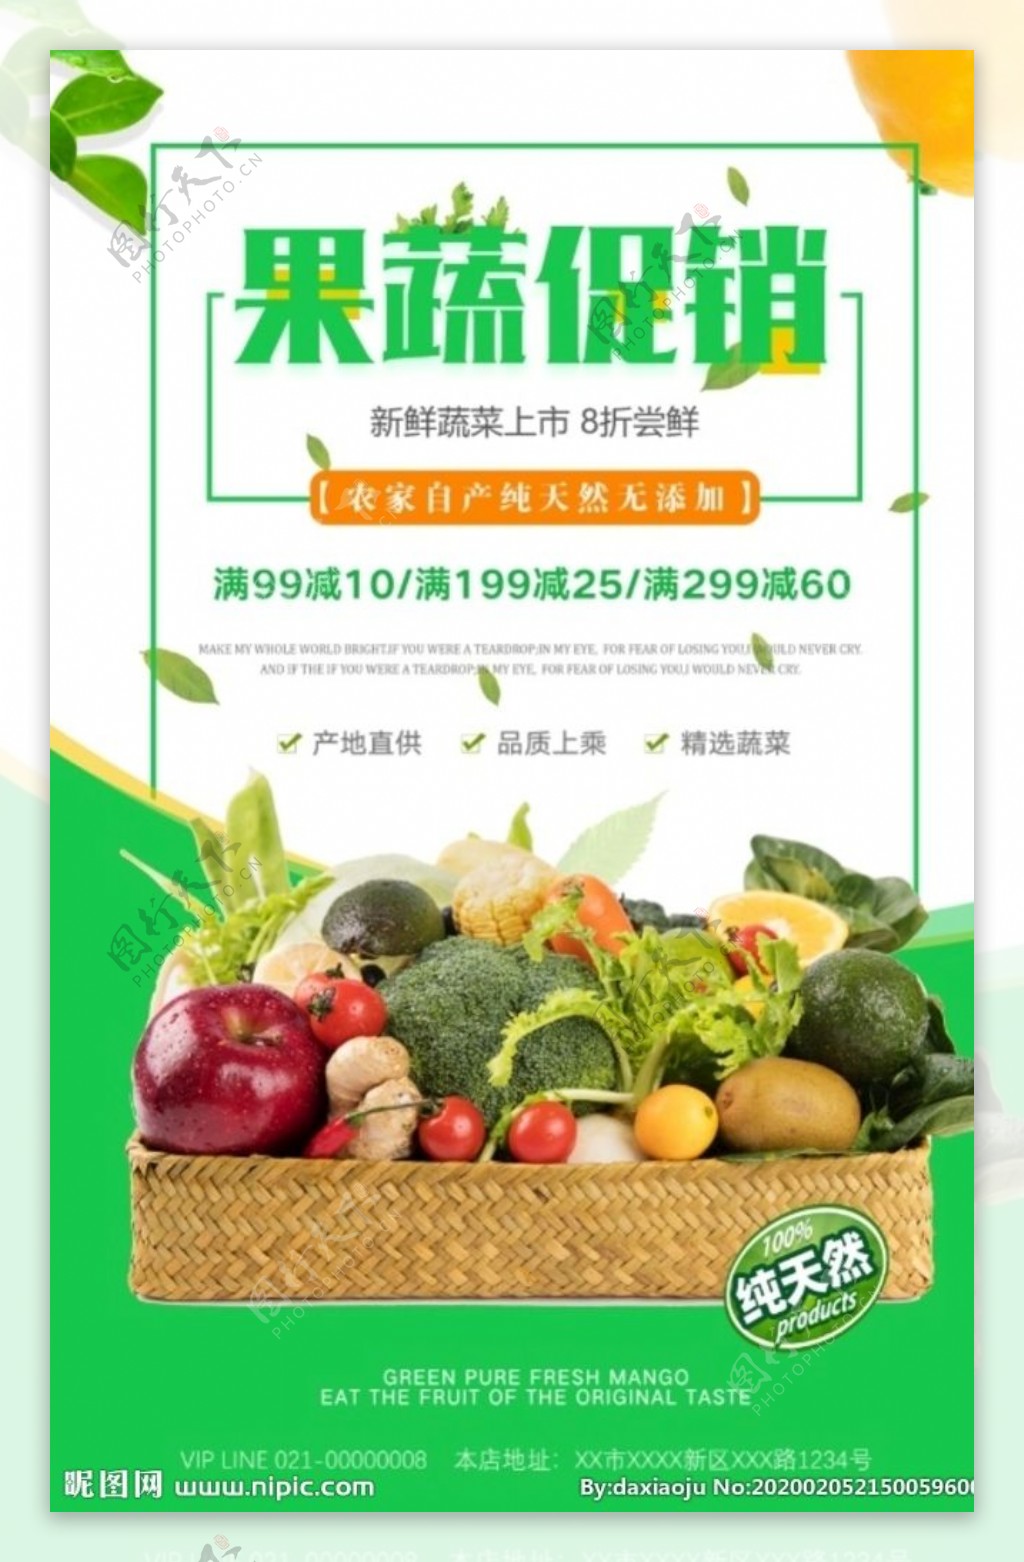 绿色蔬菜新鲜果蔬促销海报